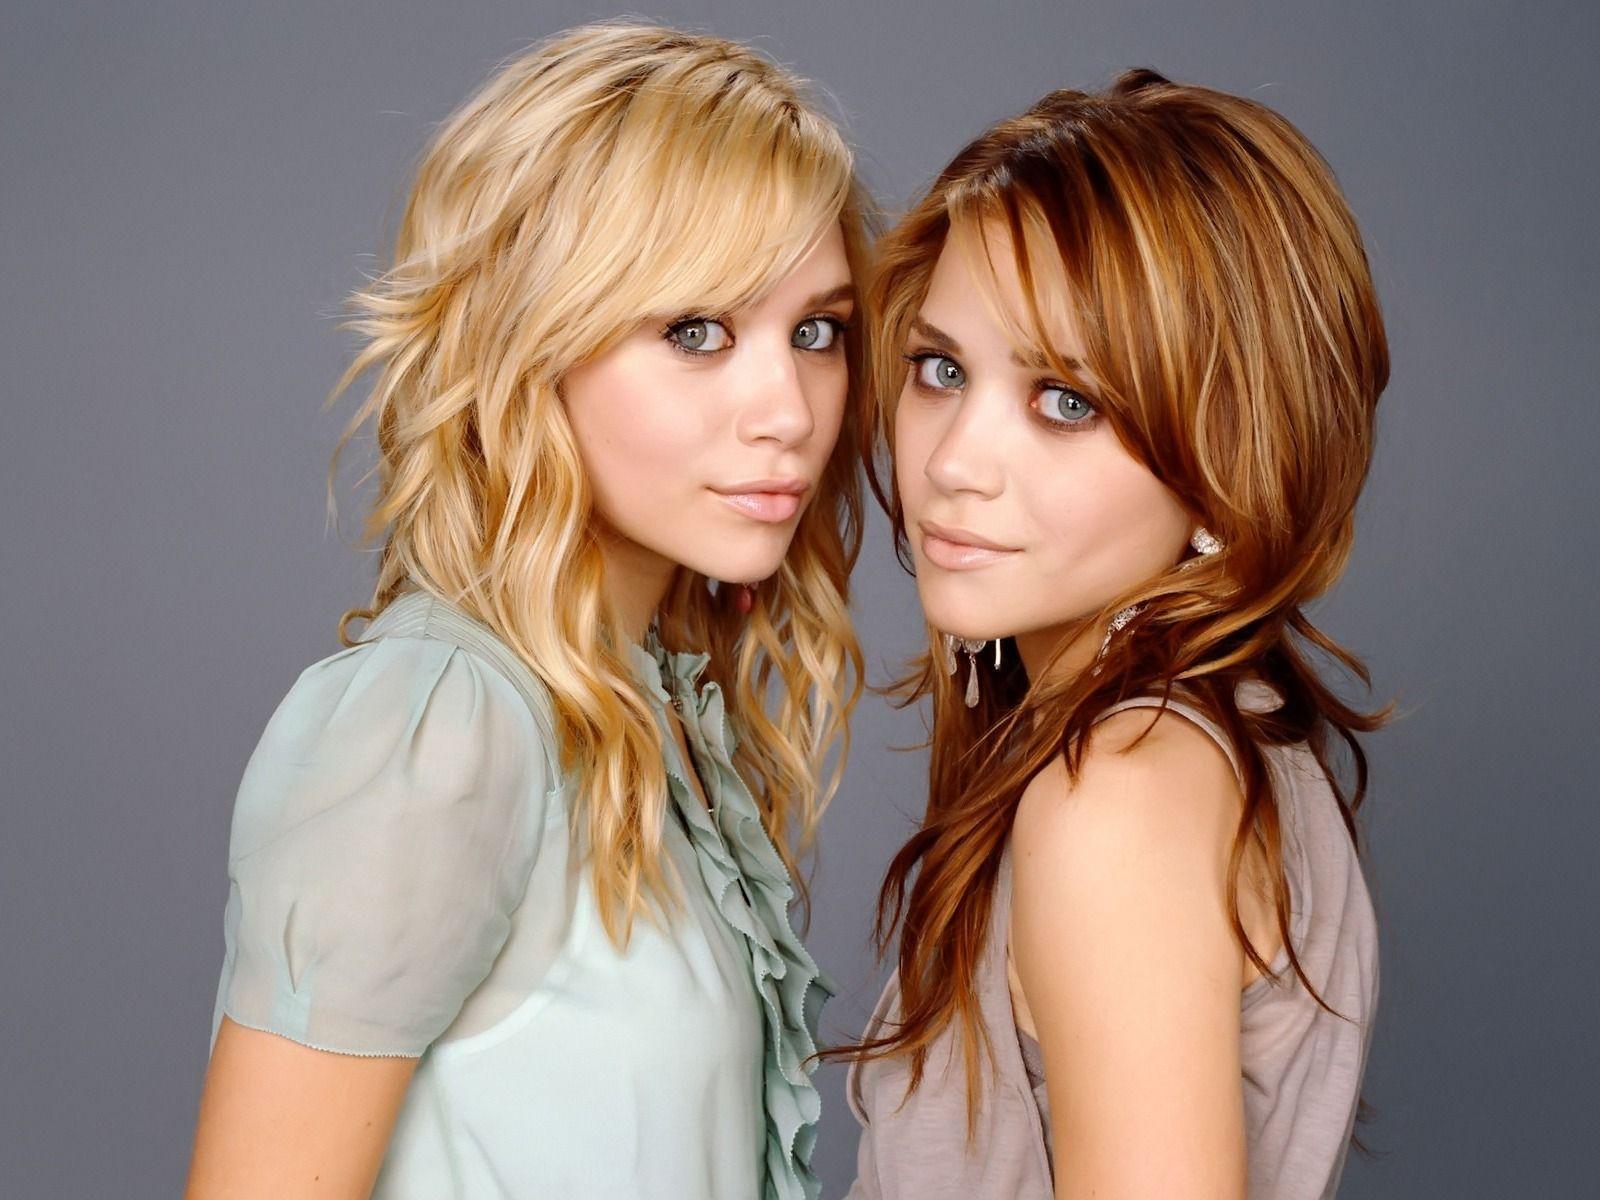 Olsen twins wallpaper olsen twins female celebrities